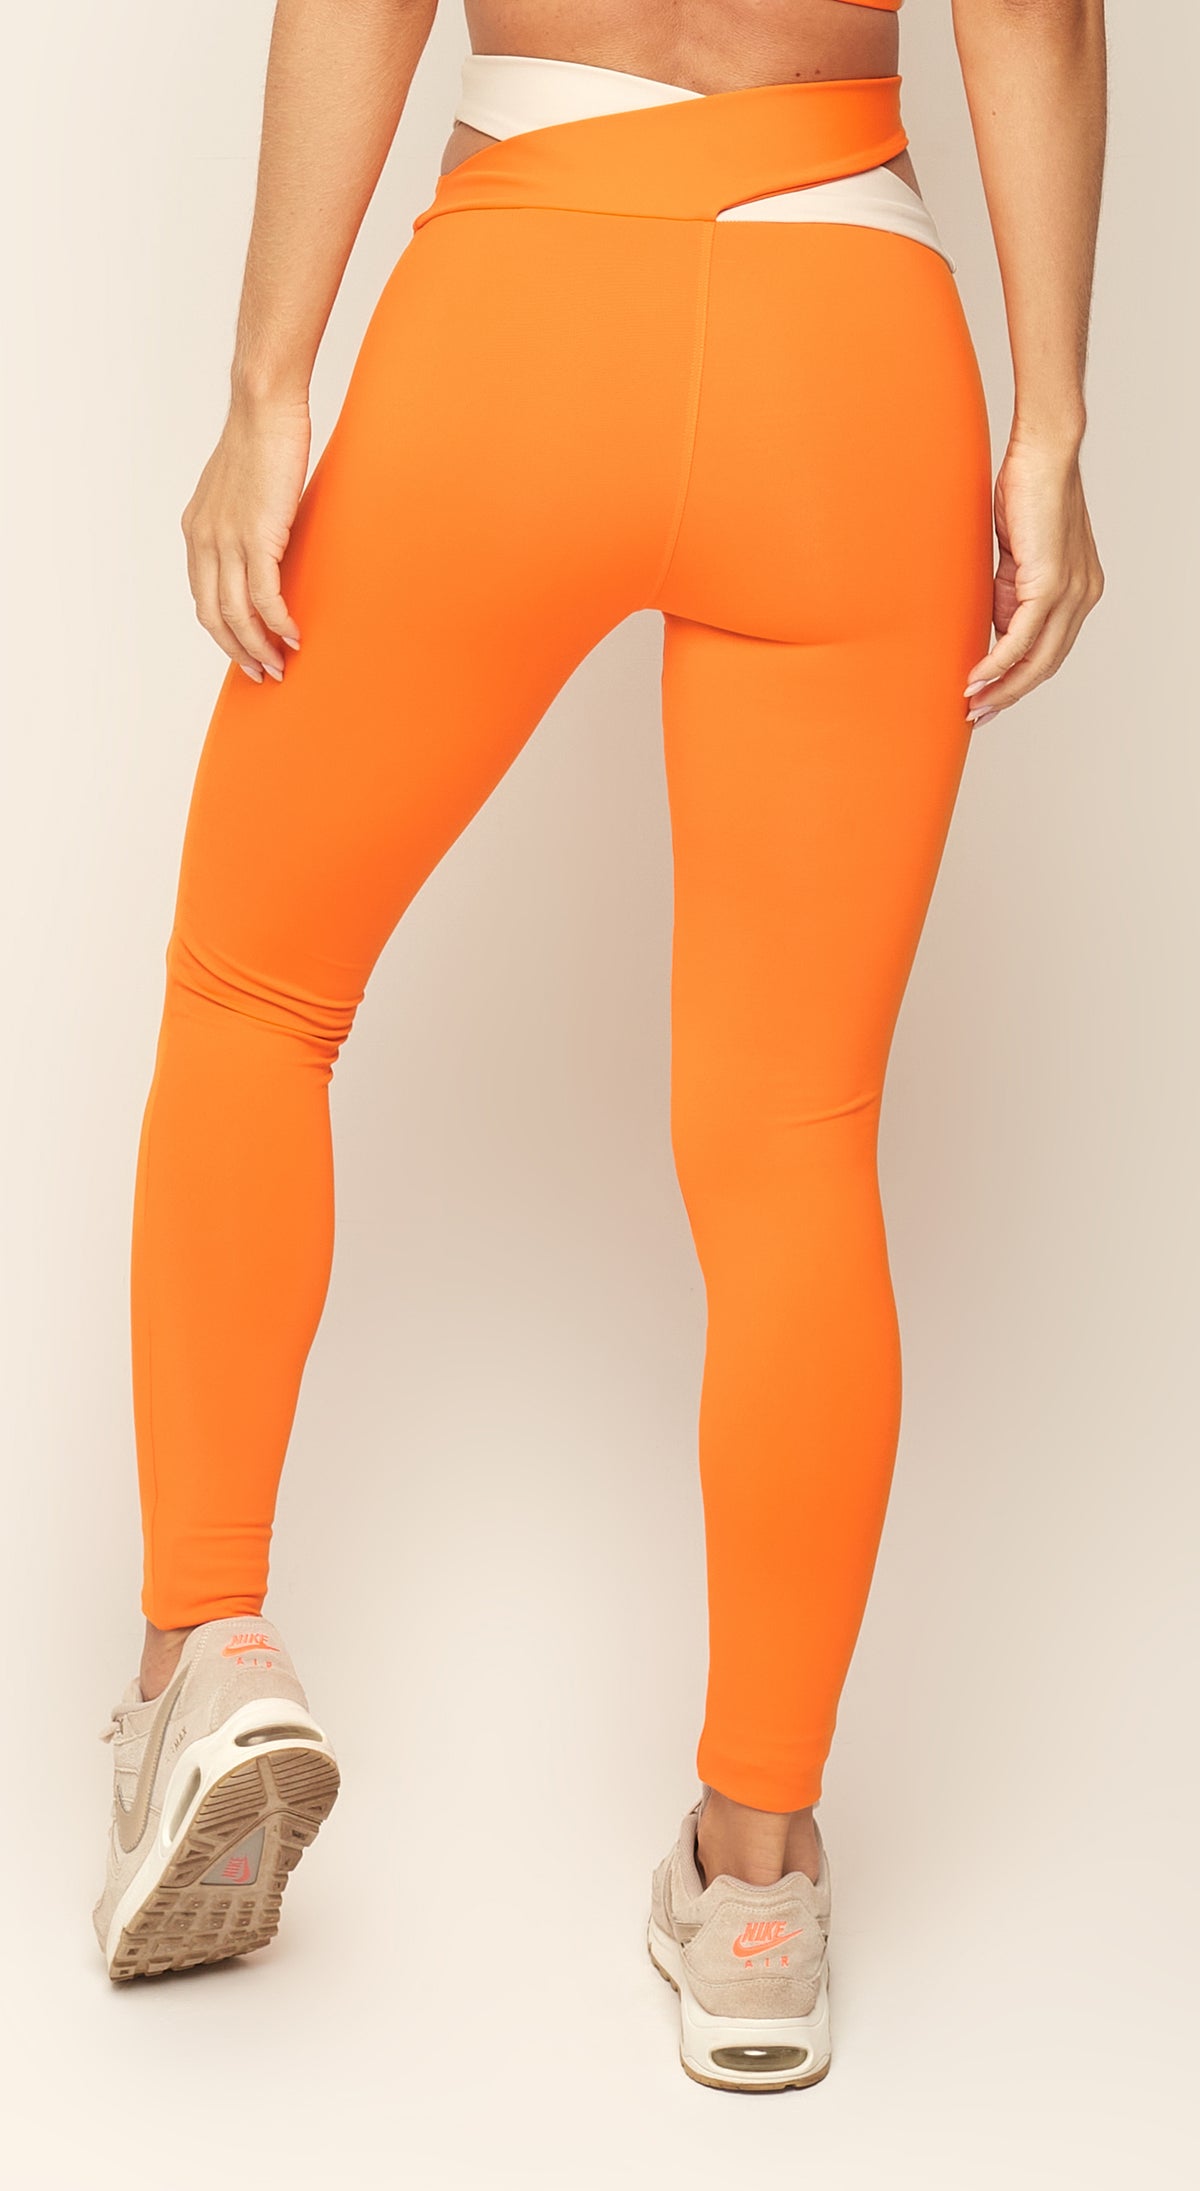 Trendy Legging - Orange